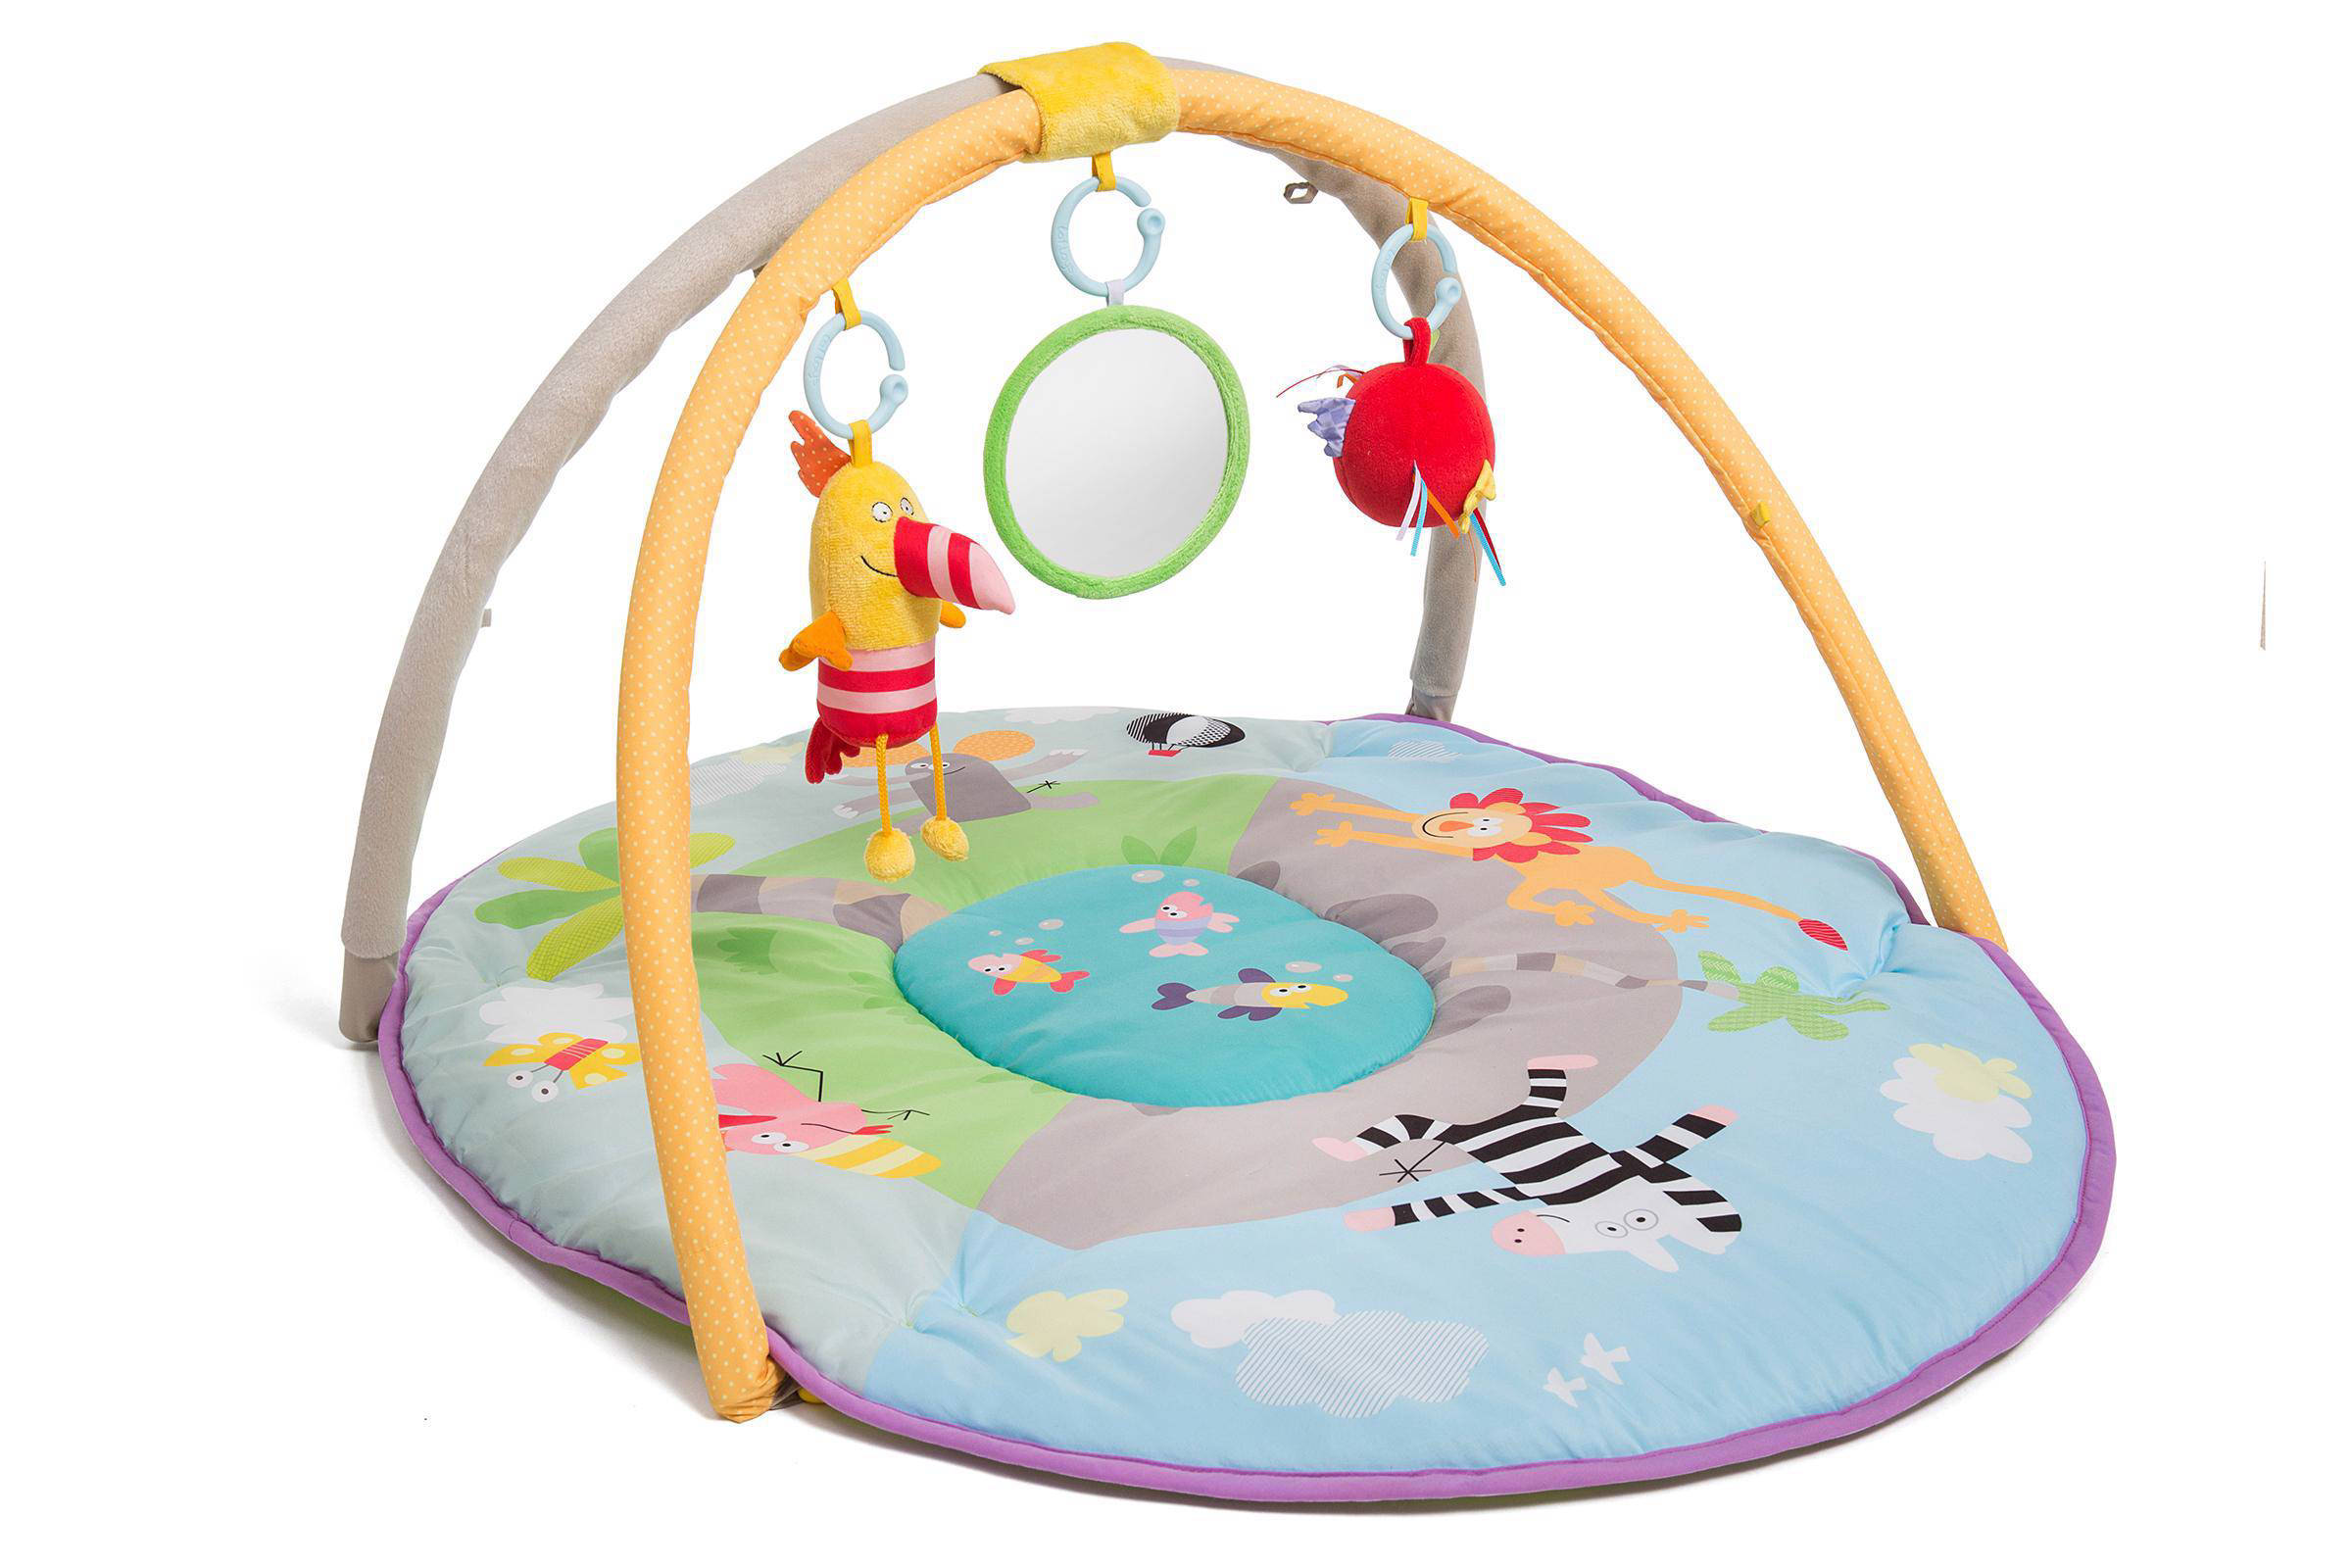 Taf Toys Baby Speelkleed Jungle Pals 100x76 Cm 11825 online kopen